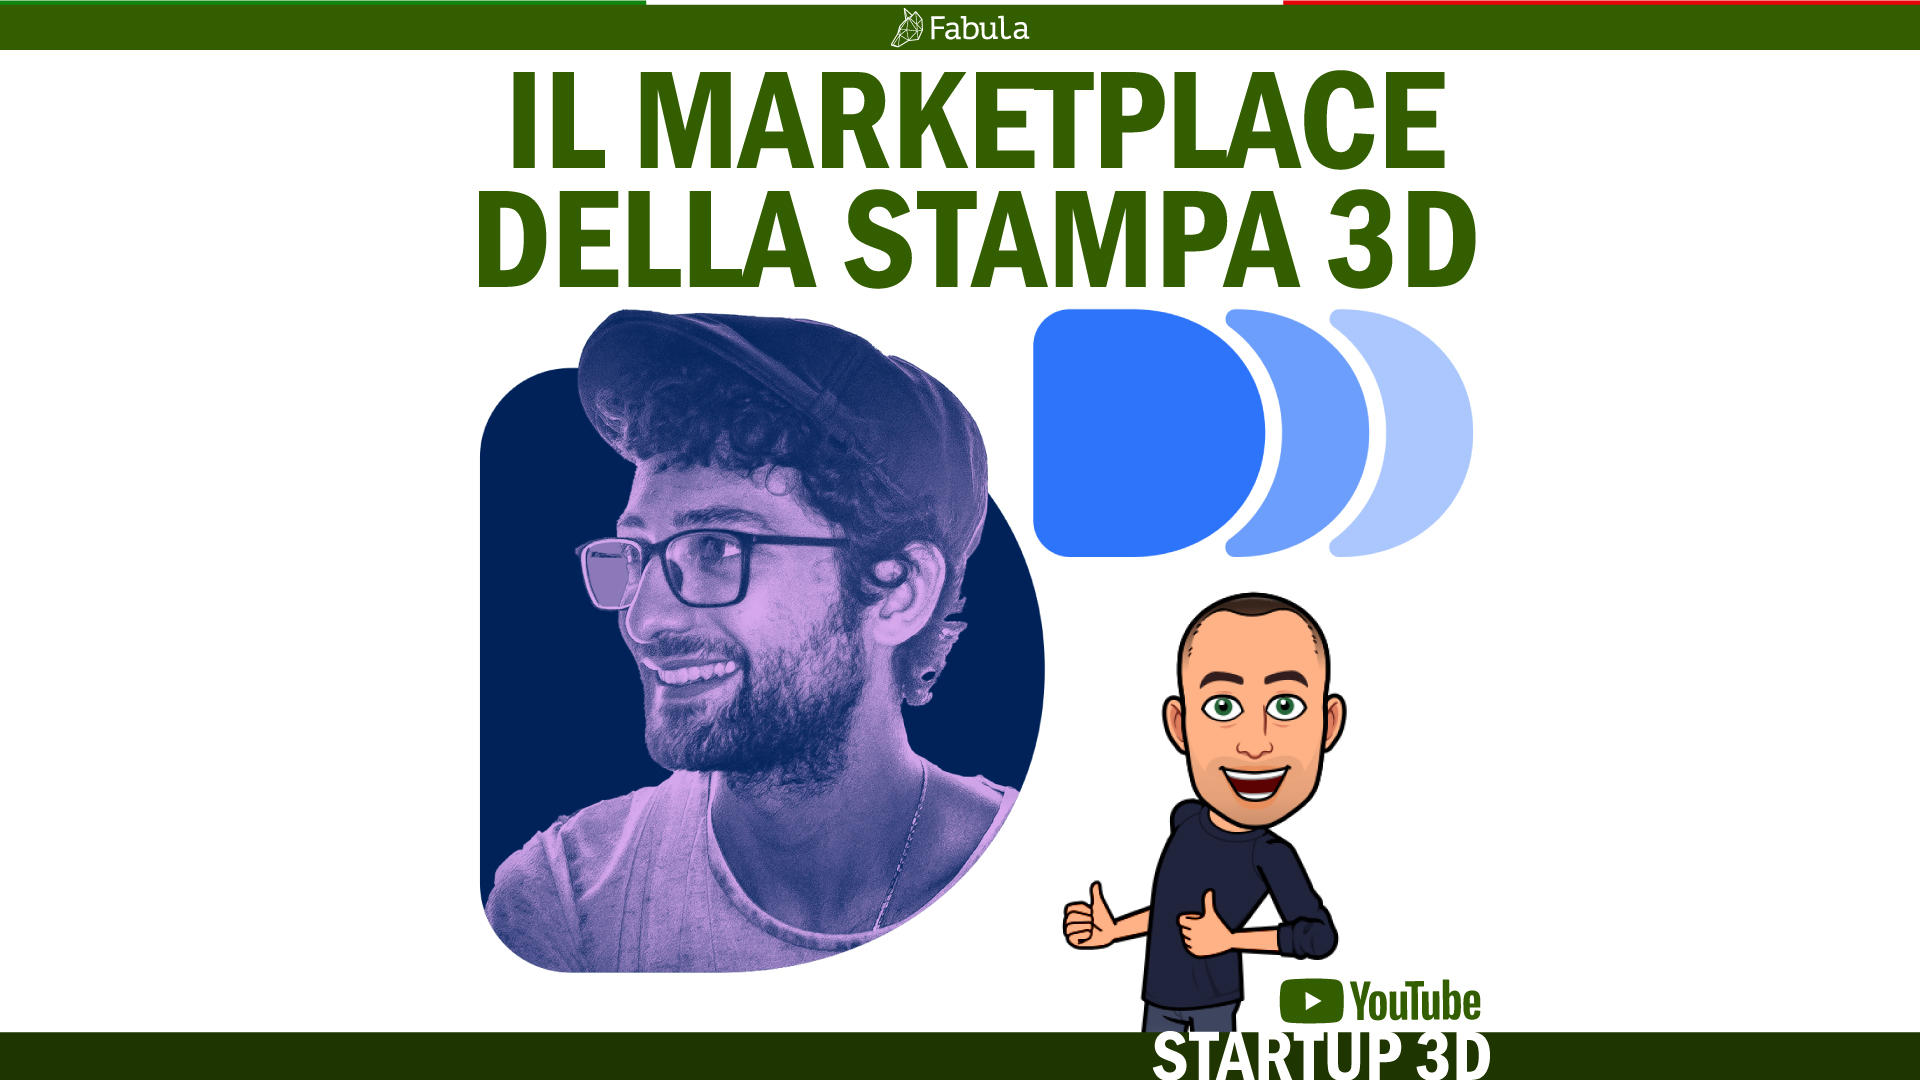 STARTUP 3D - DDD Beta - Il marketplace della stampa 3D